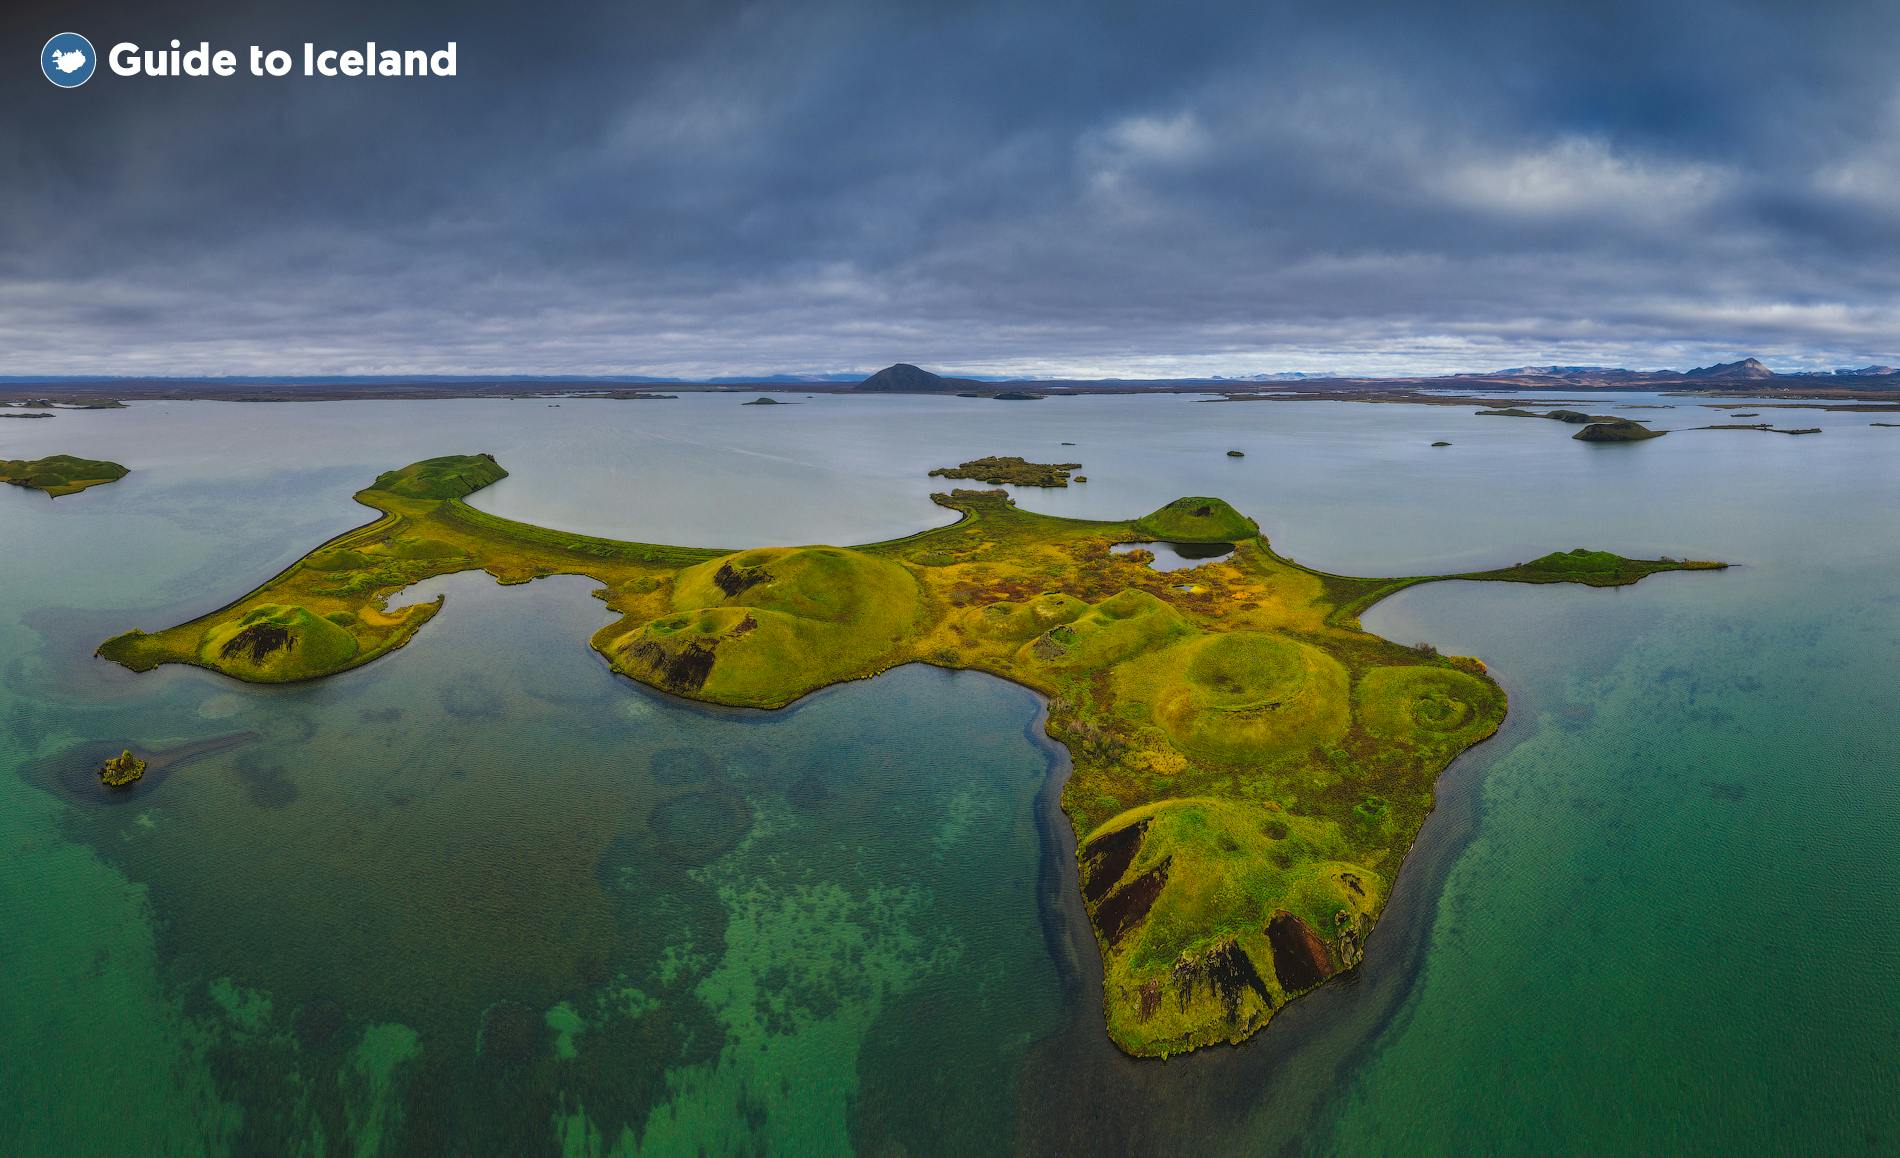 ทะเลสาบมิวาทน์ในทางเหนือของไอซ์แลนด์เป็นสถานที่ท่องเที่ยวทางธรรมชาติที่น่าประทับใจมาก